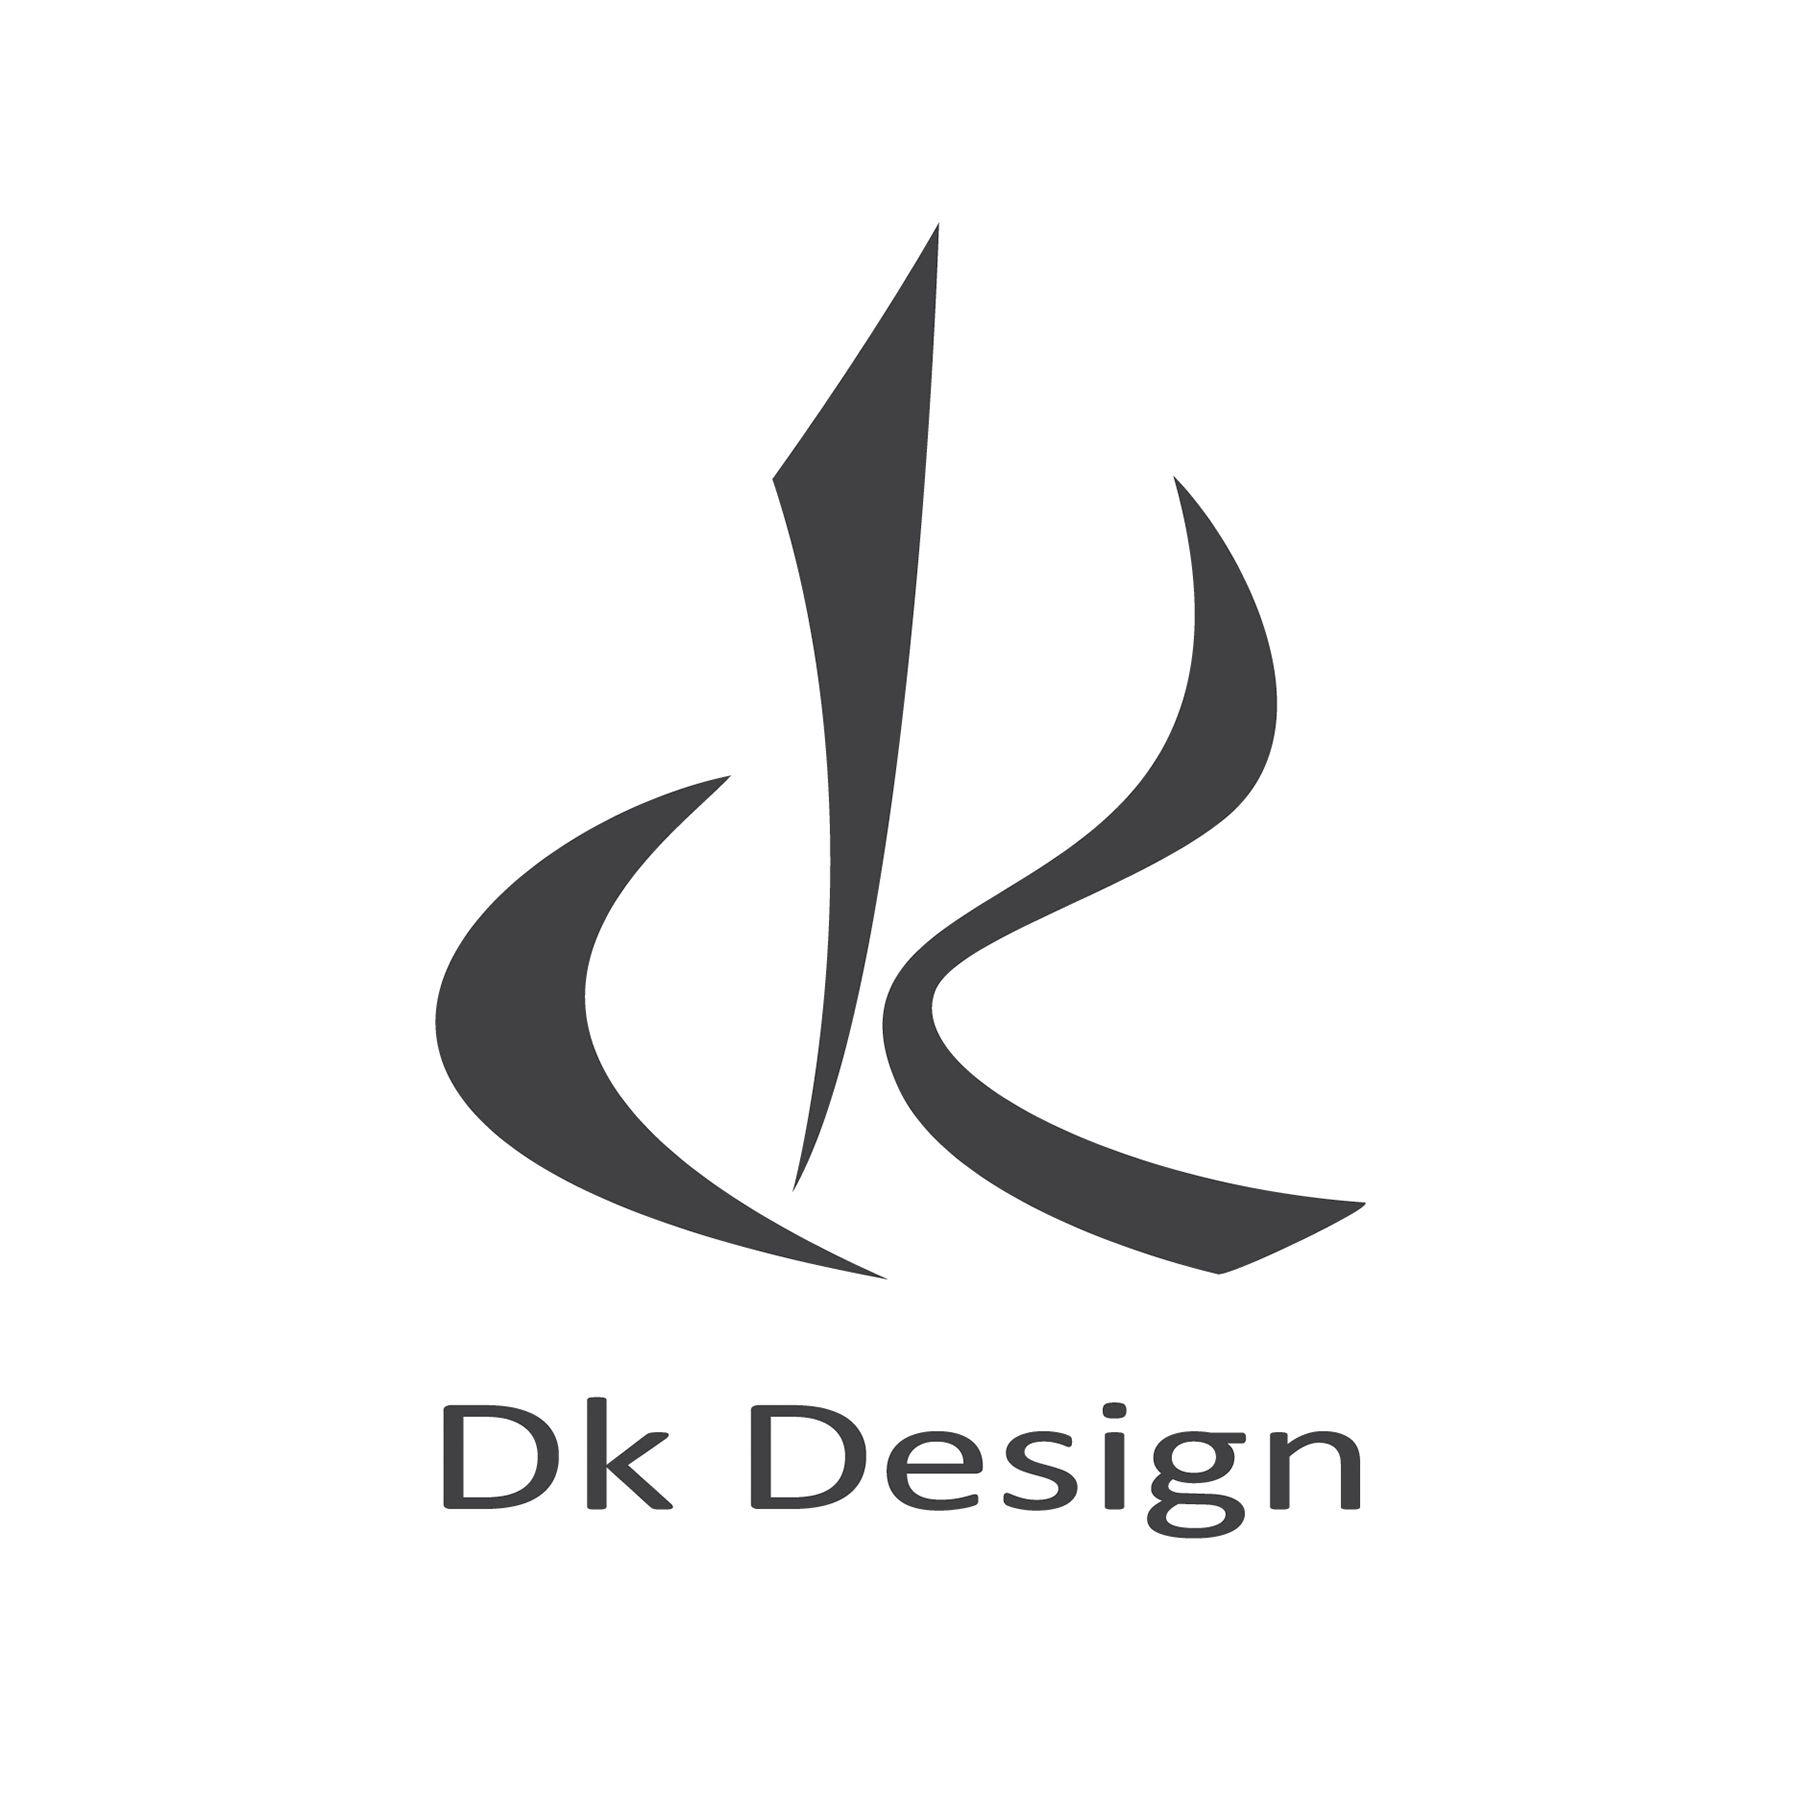 DK Logo - Dk Logos